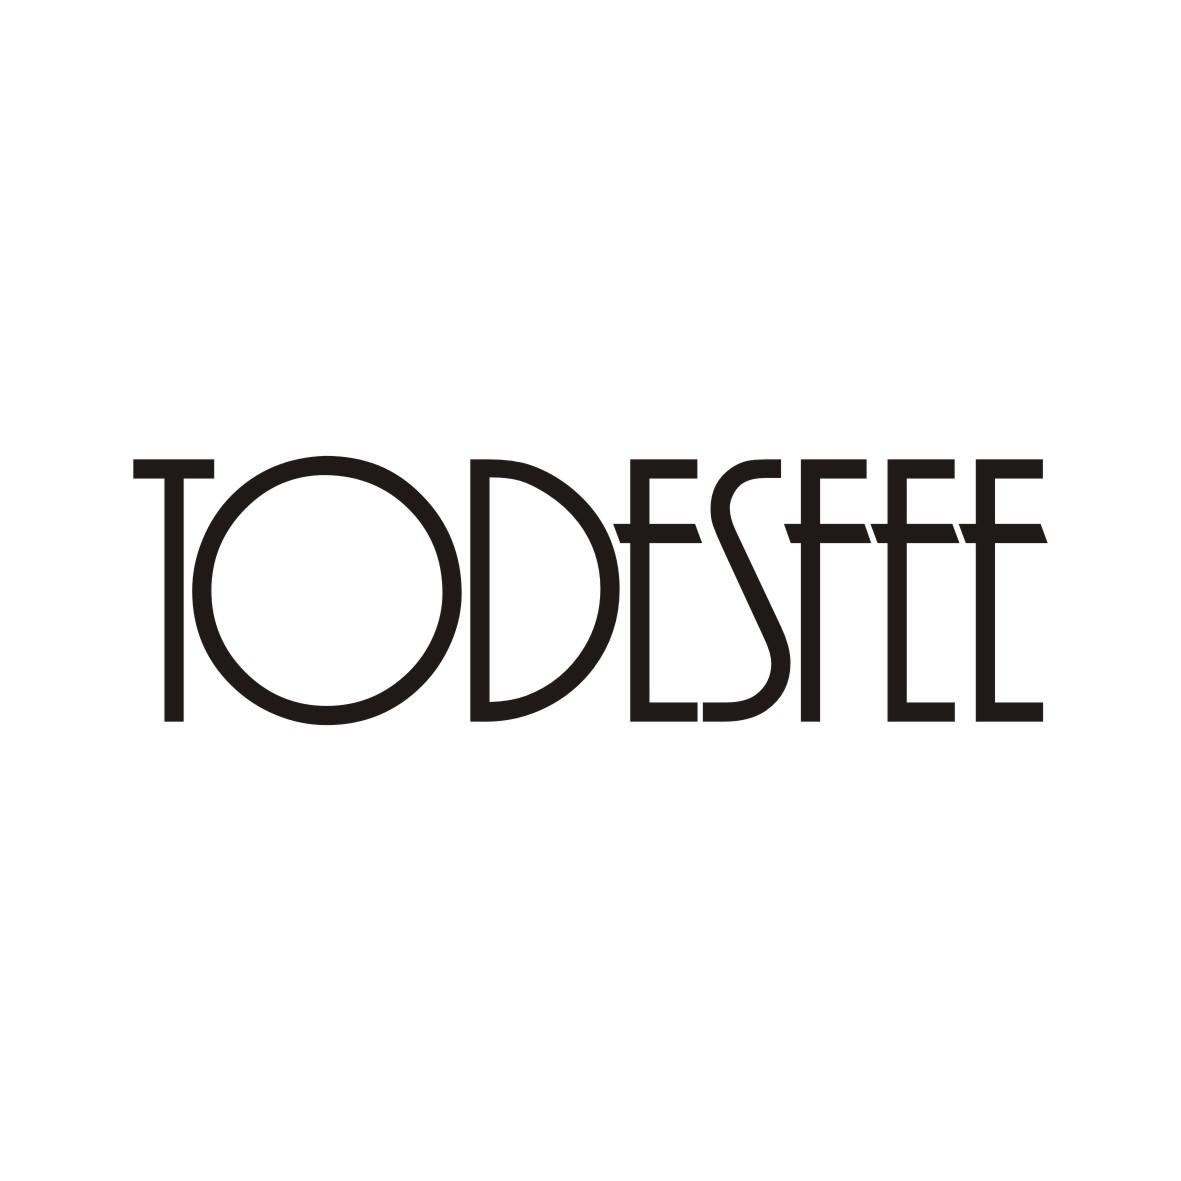 TODESFEE